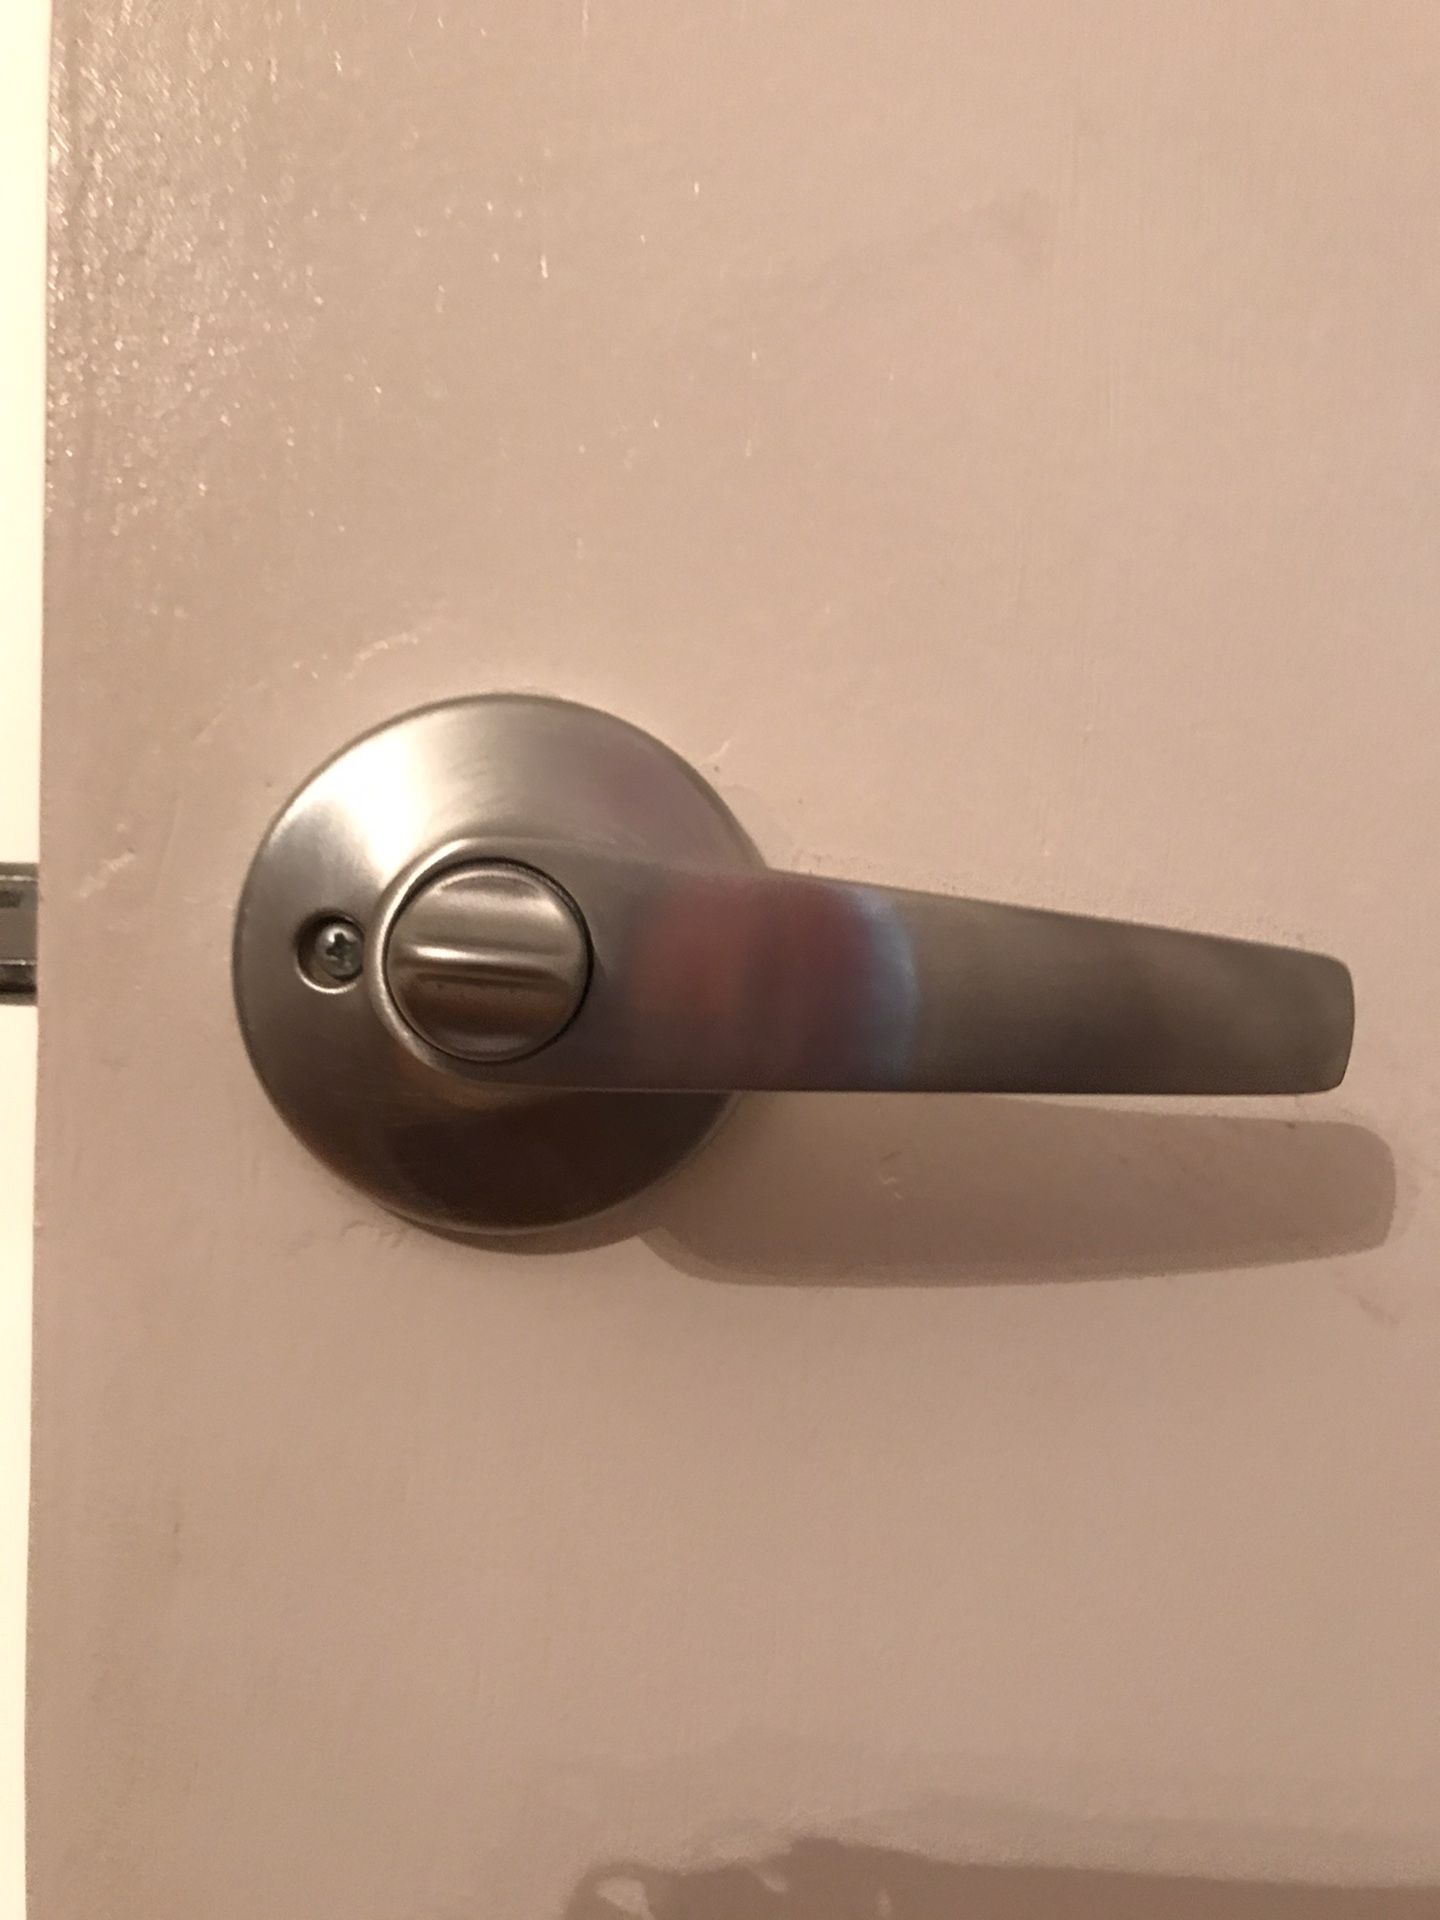 Assorted door handles